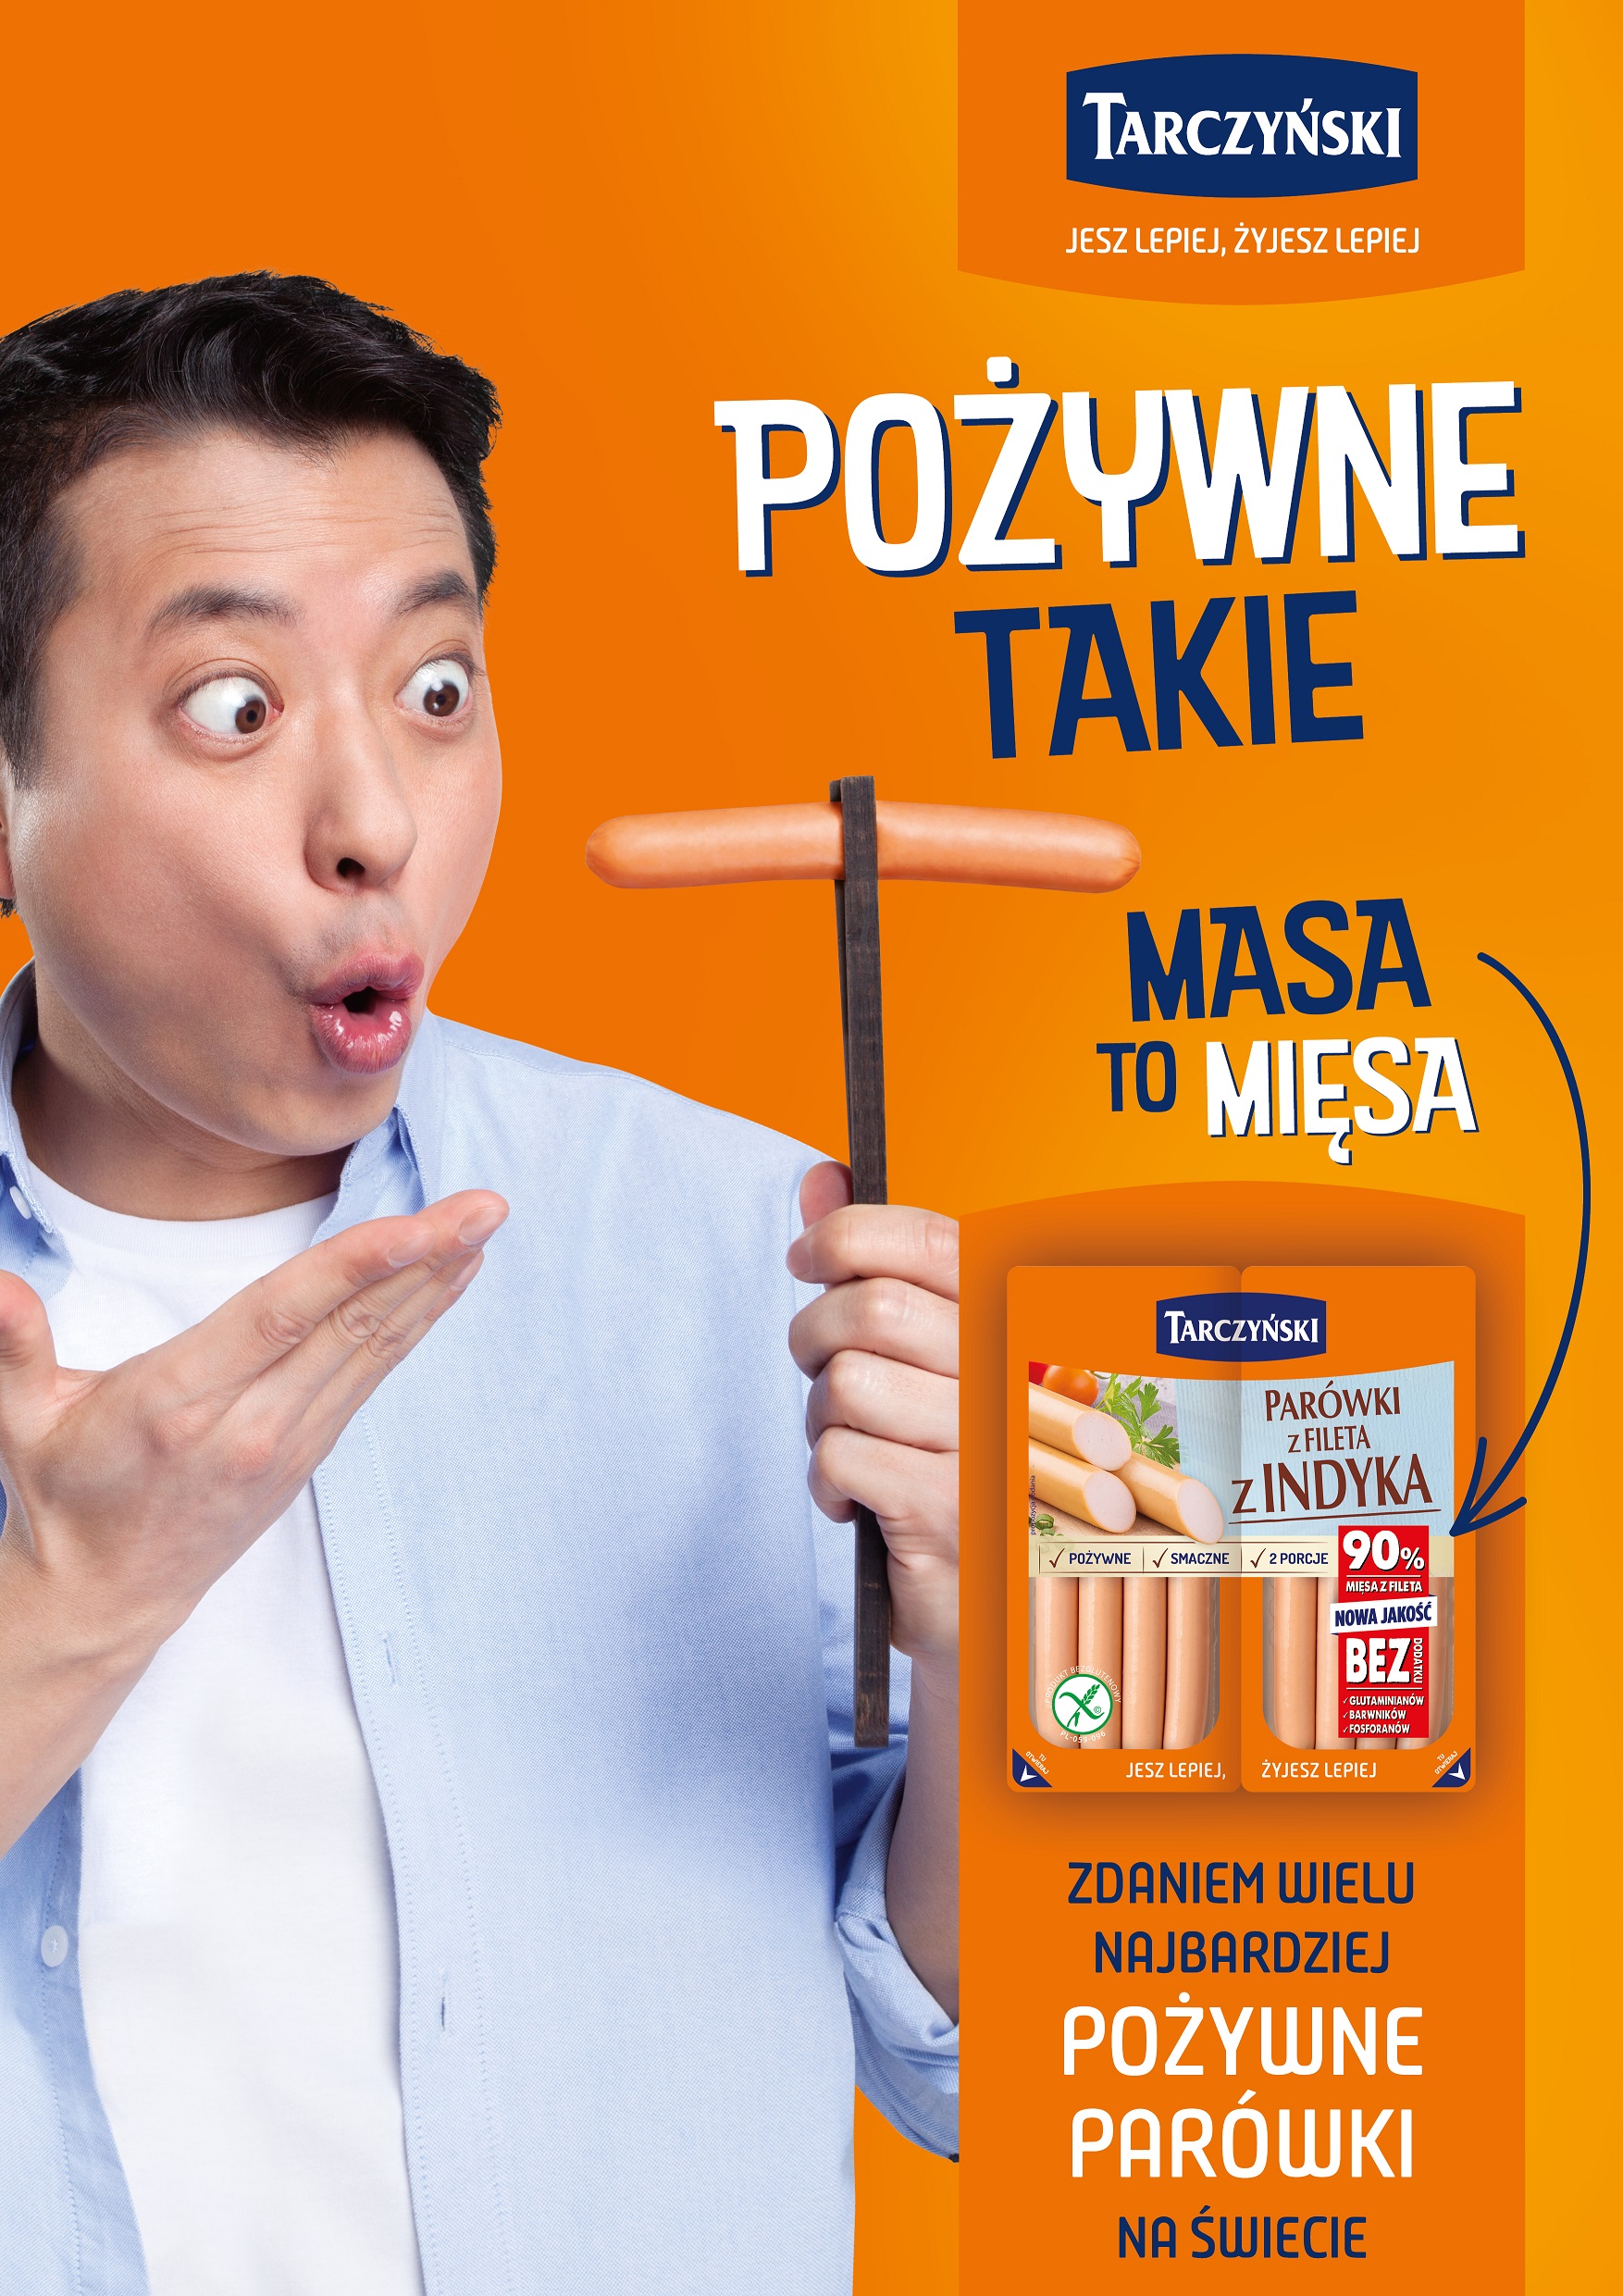 Kampania reklamowa nowych parówek premium marki Tarczyński